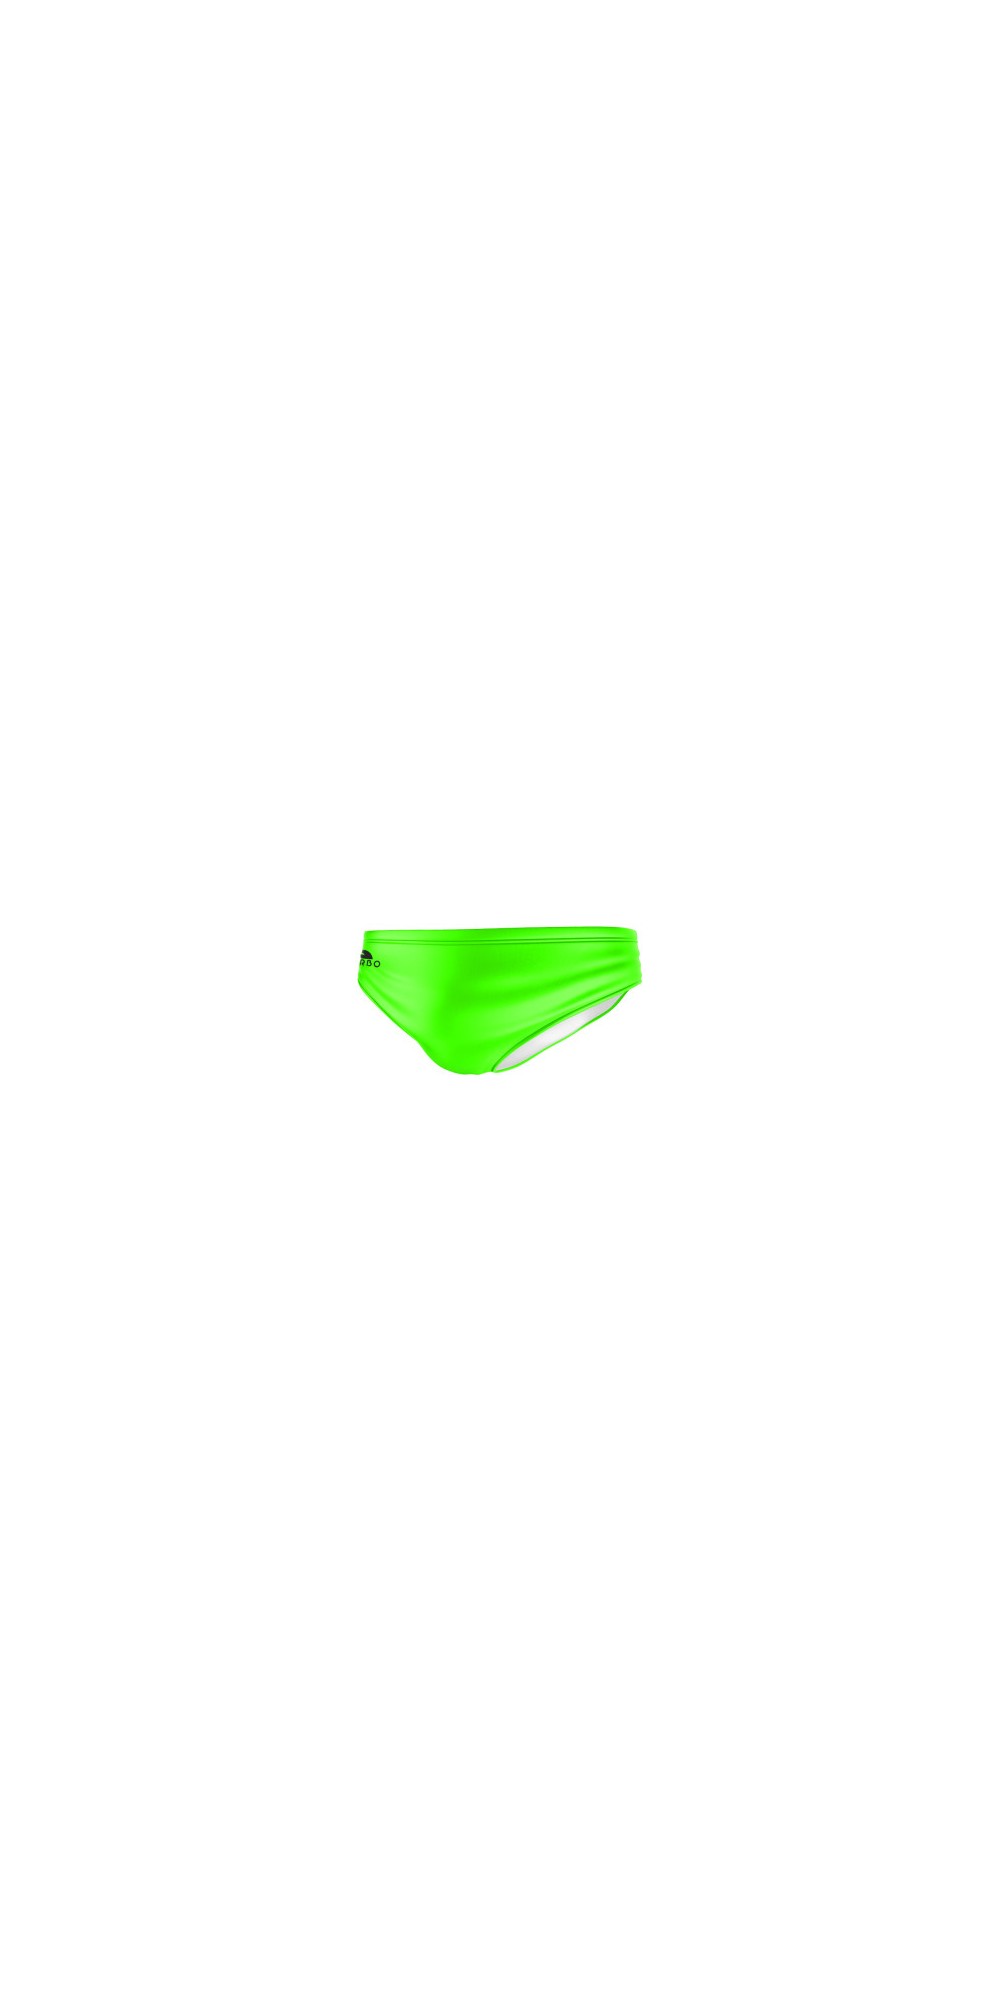 Basic Fluor Vert (3 Semaines)